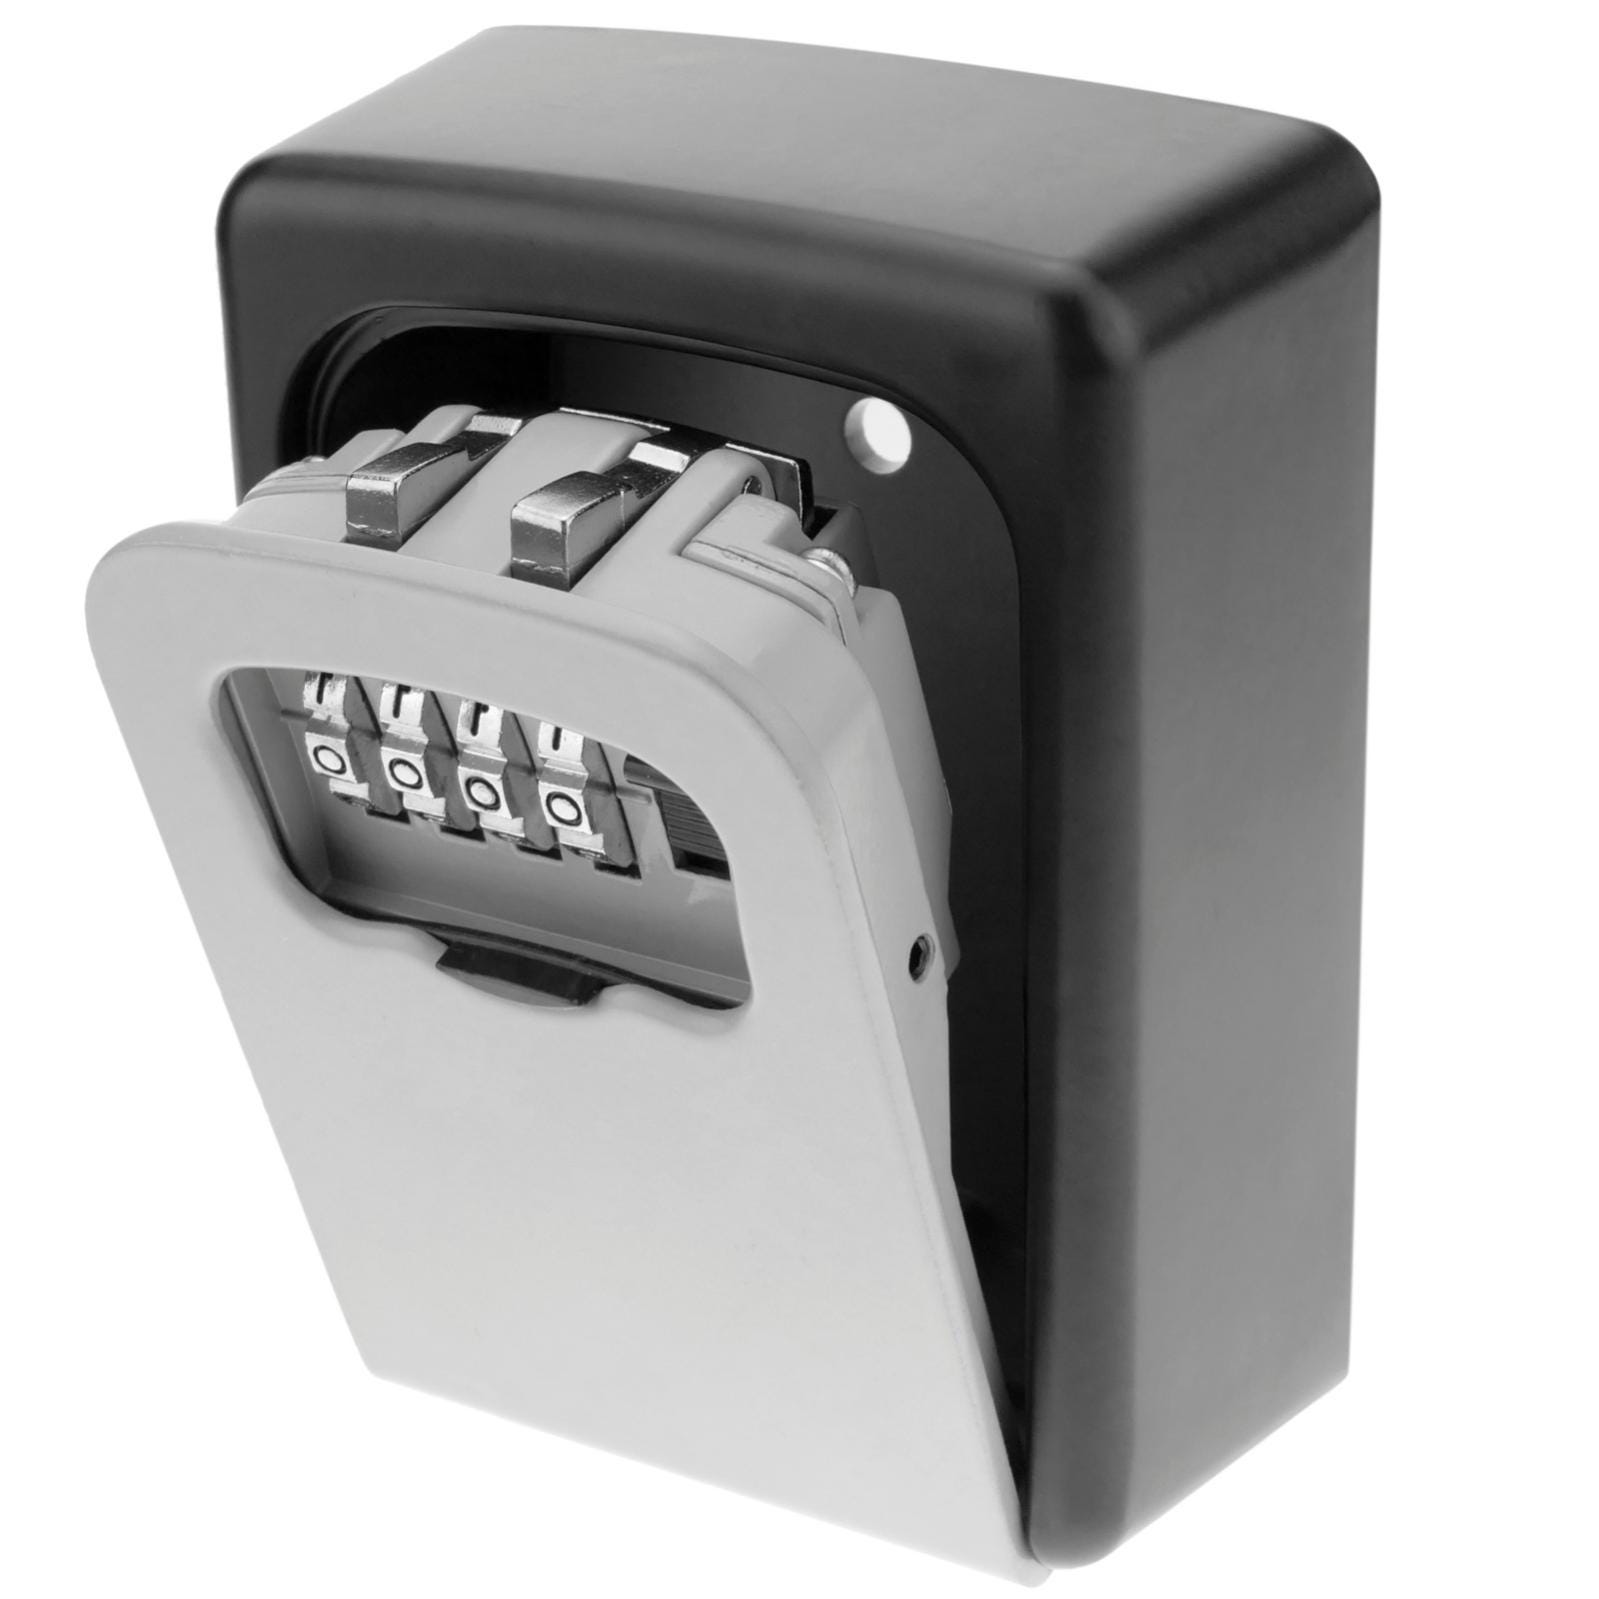 Caja de seguridad para llaves cerradura con combinación 4 dígitos